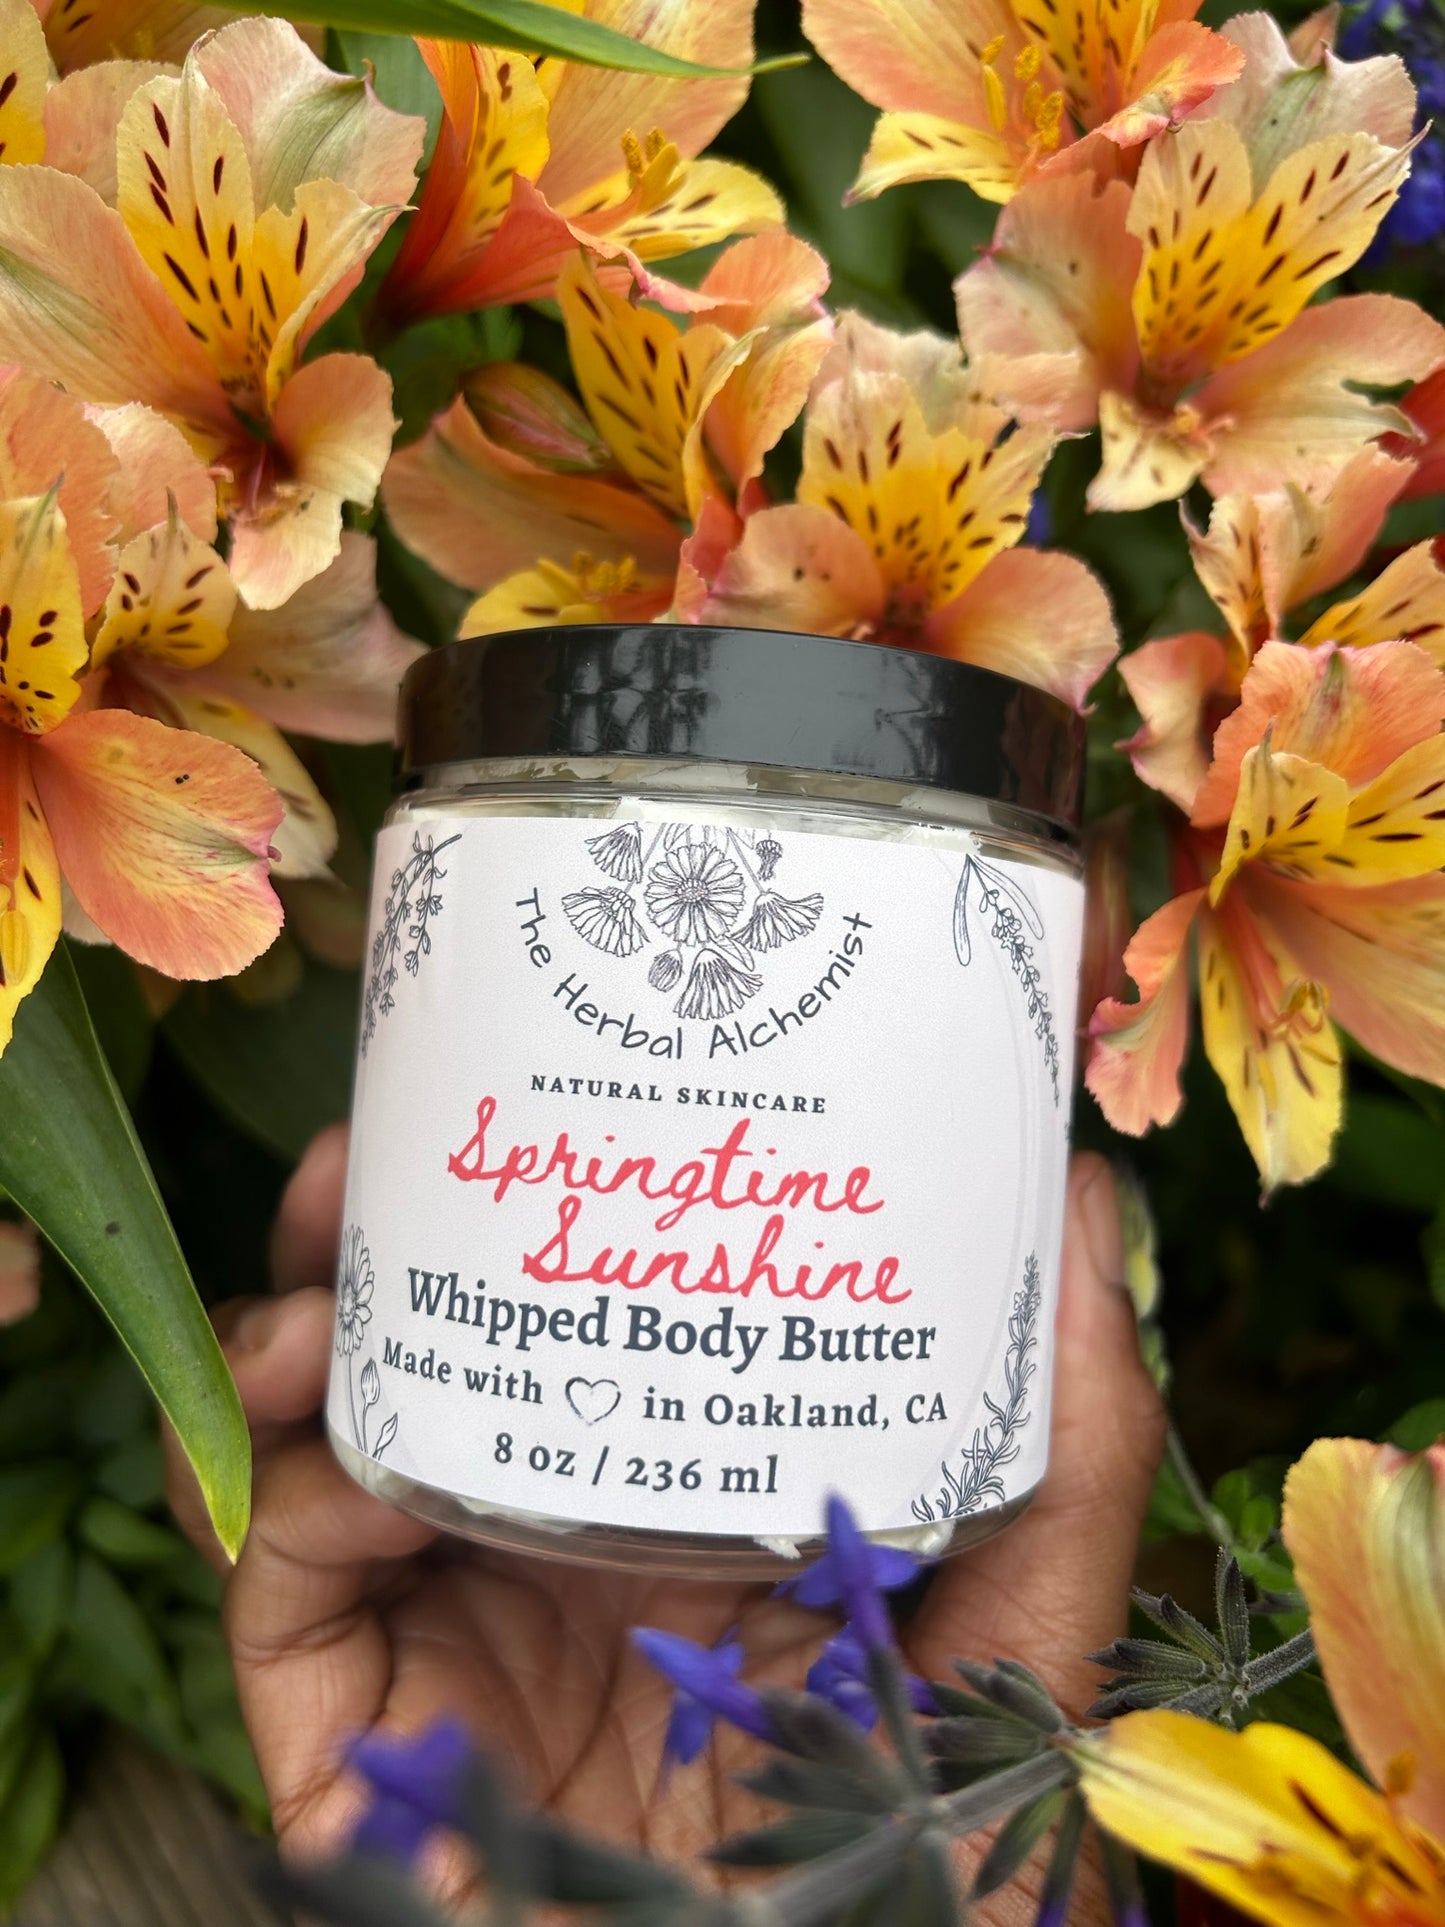 Springtime Sunshine Whipped Body Butter - The Herbal Alchemist